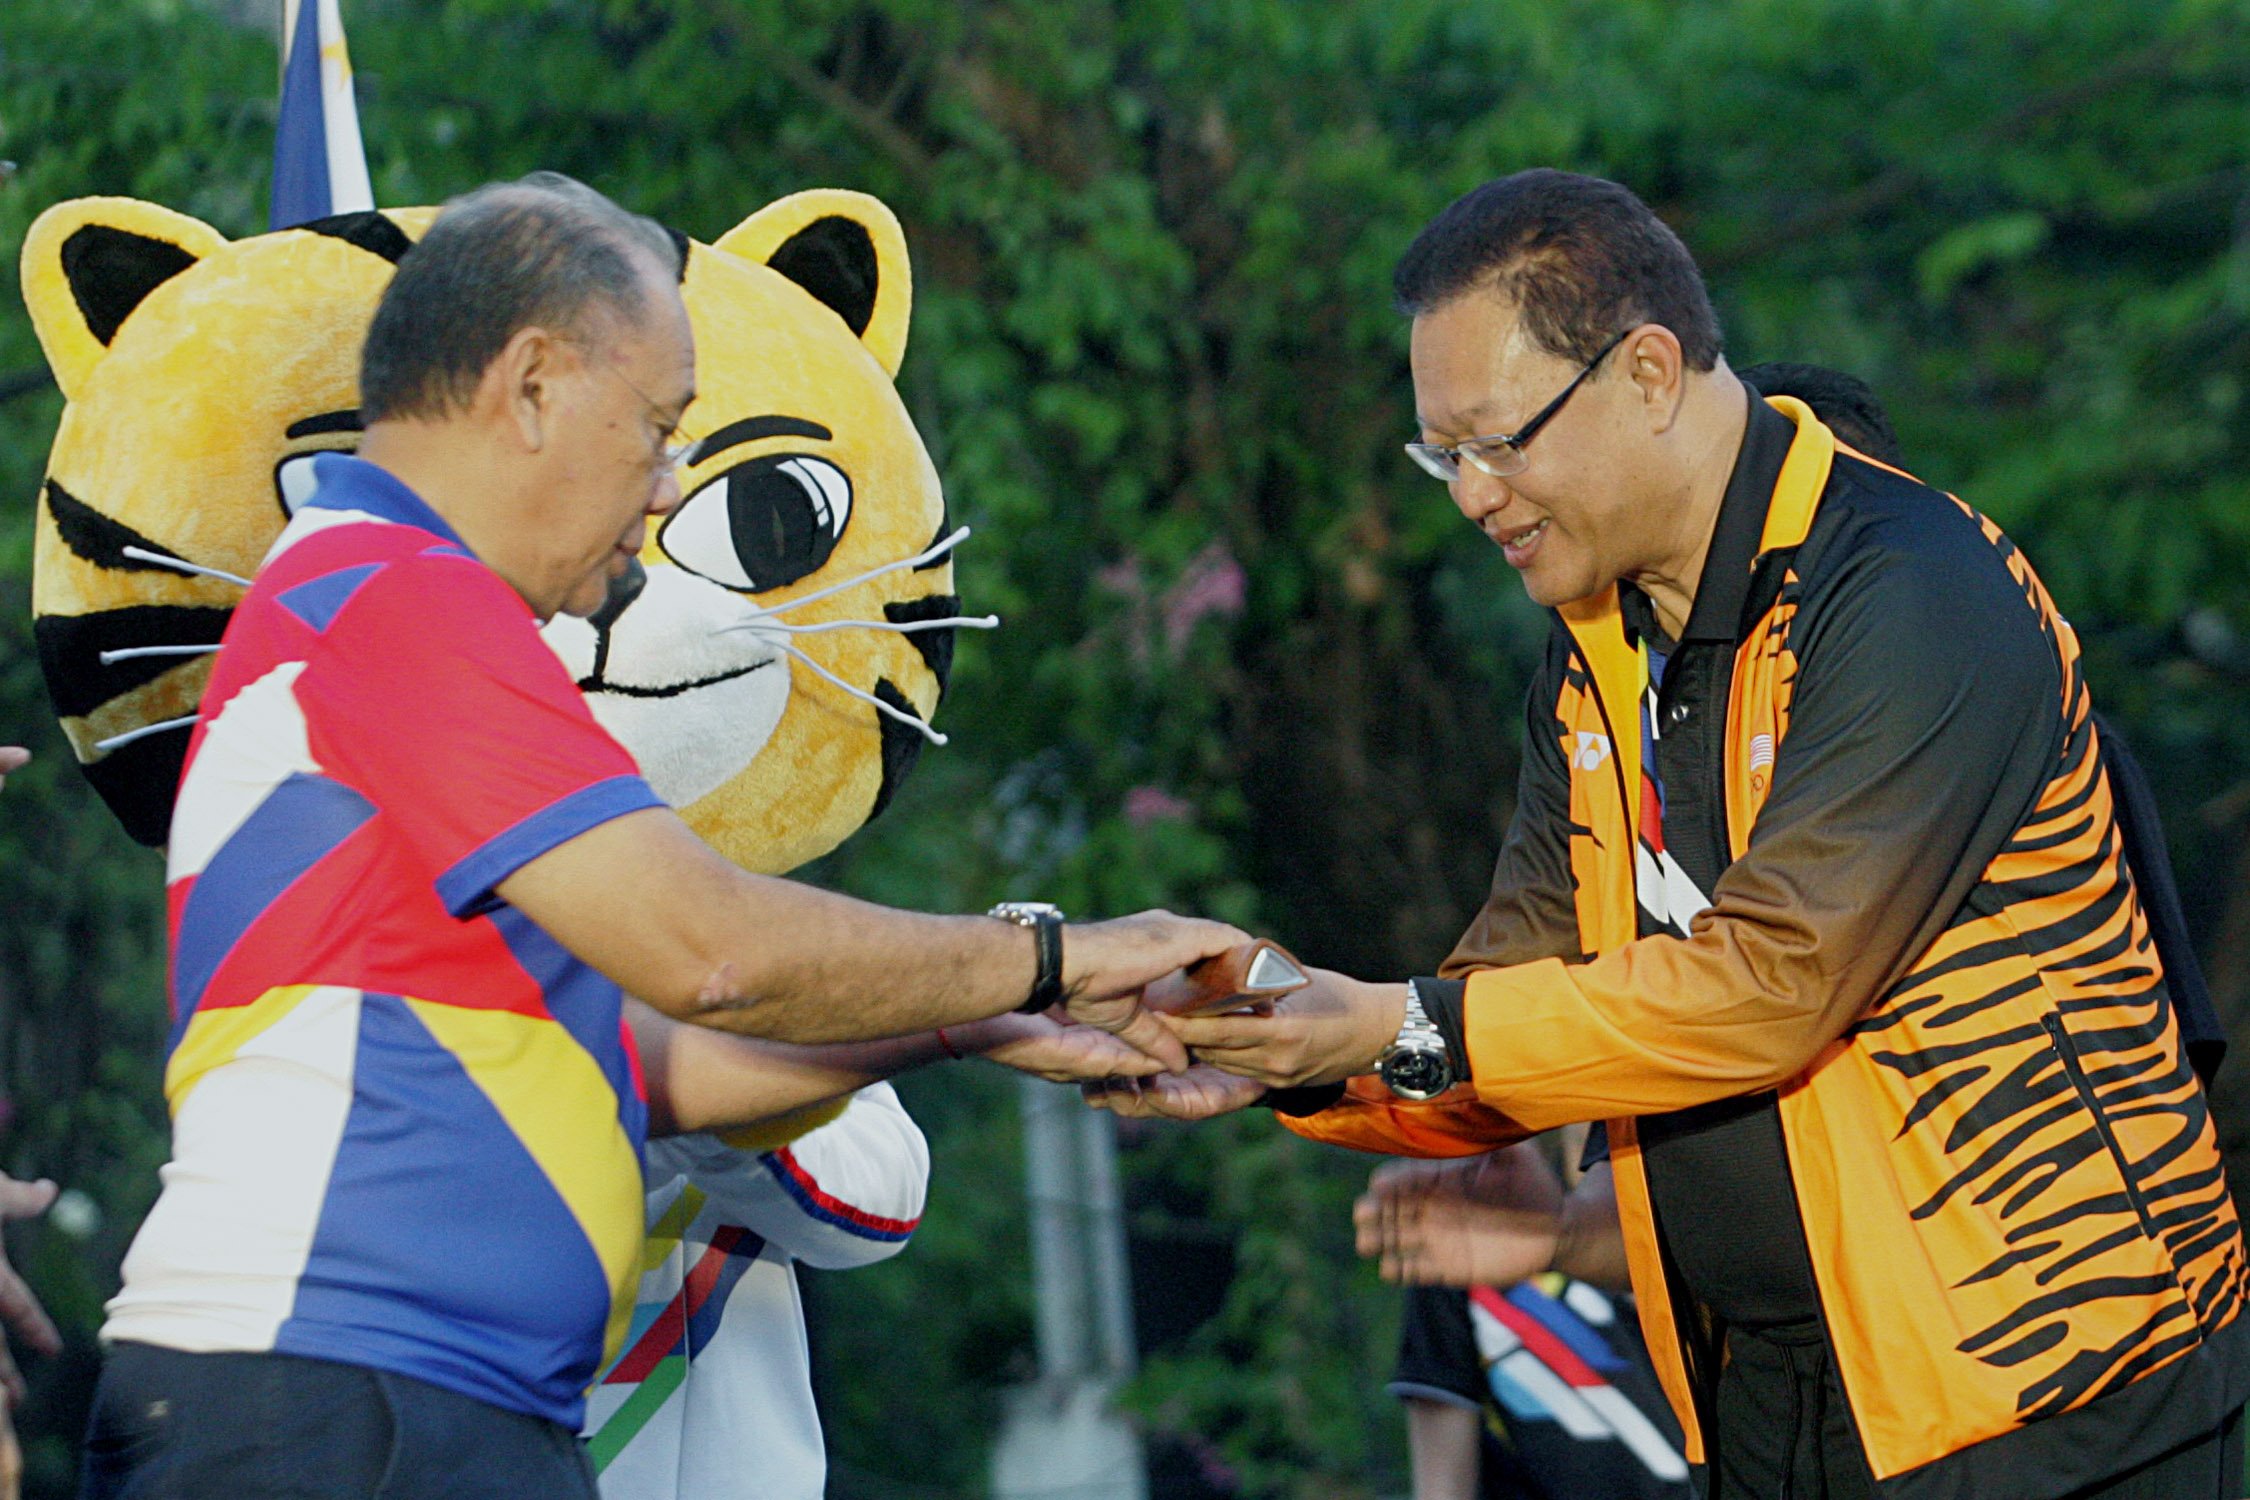 Baton runs for 29th SEA Games & 9th ASEAN PARA Games